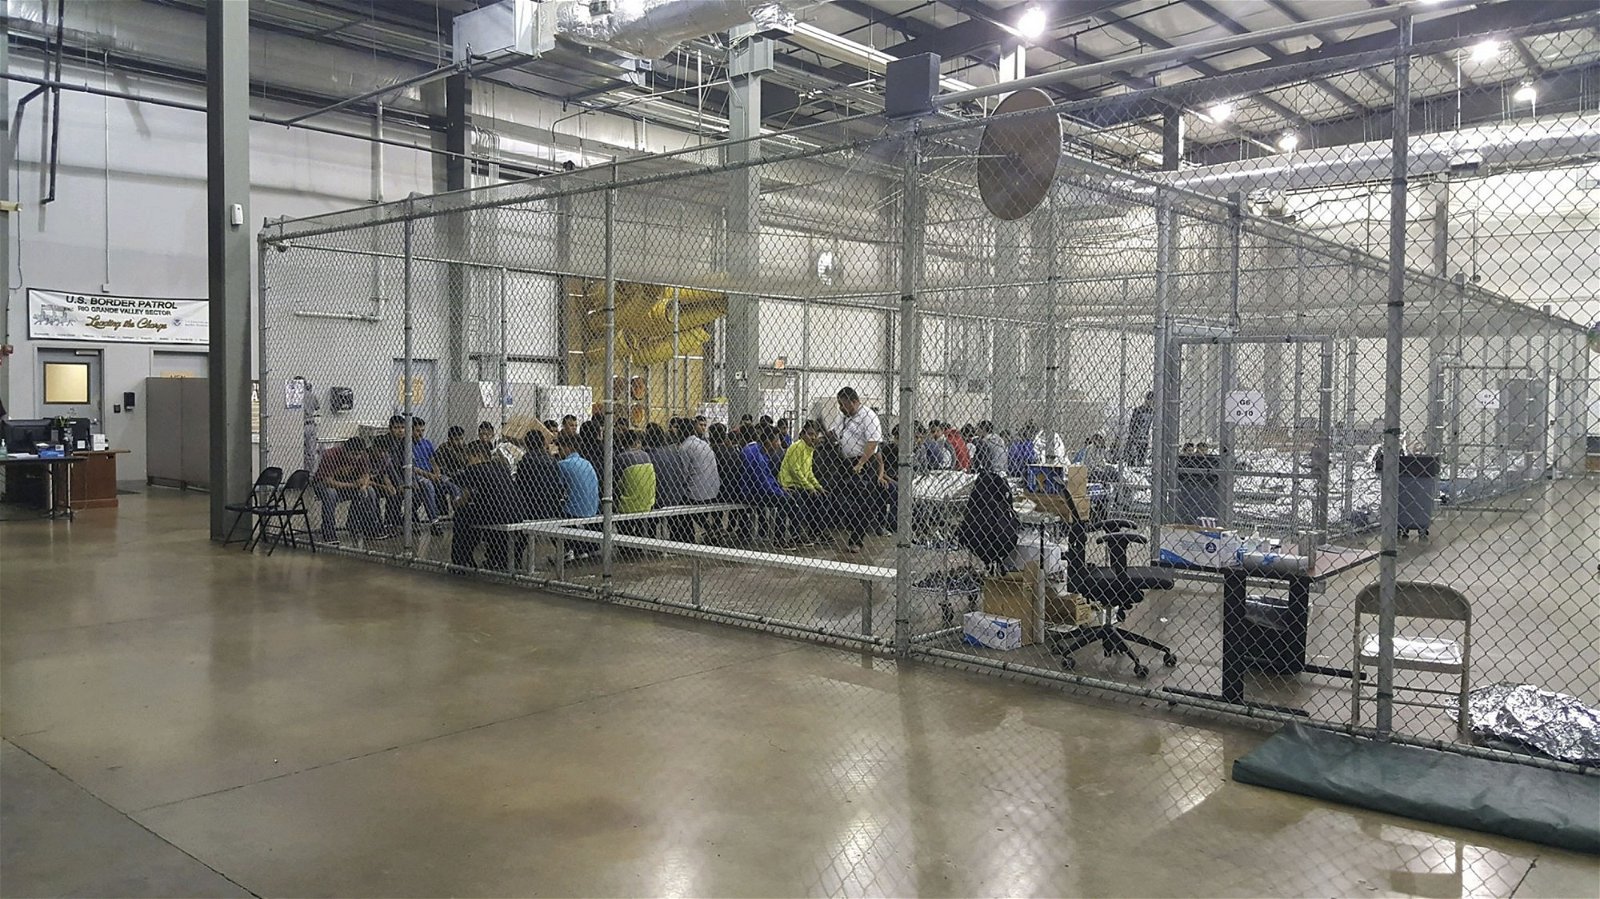 非法入境的成年移民，被拘禁在麦卡伦拘留设施的特定网笼内，等候边防警卫队的安排。